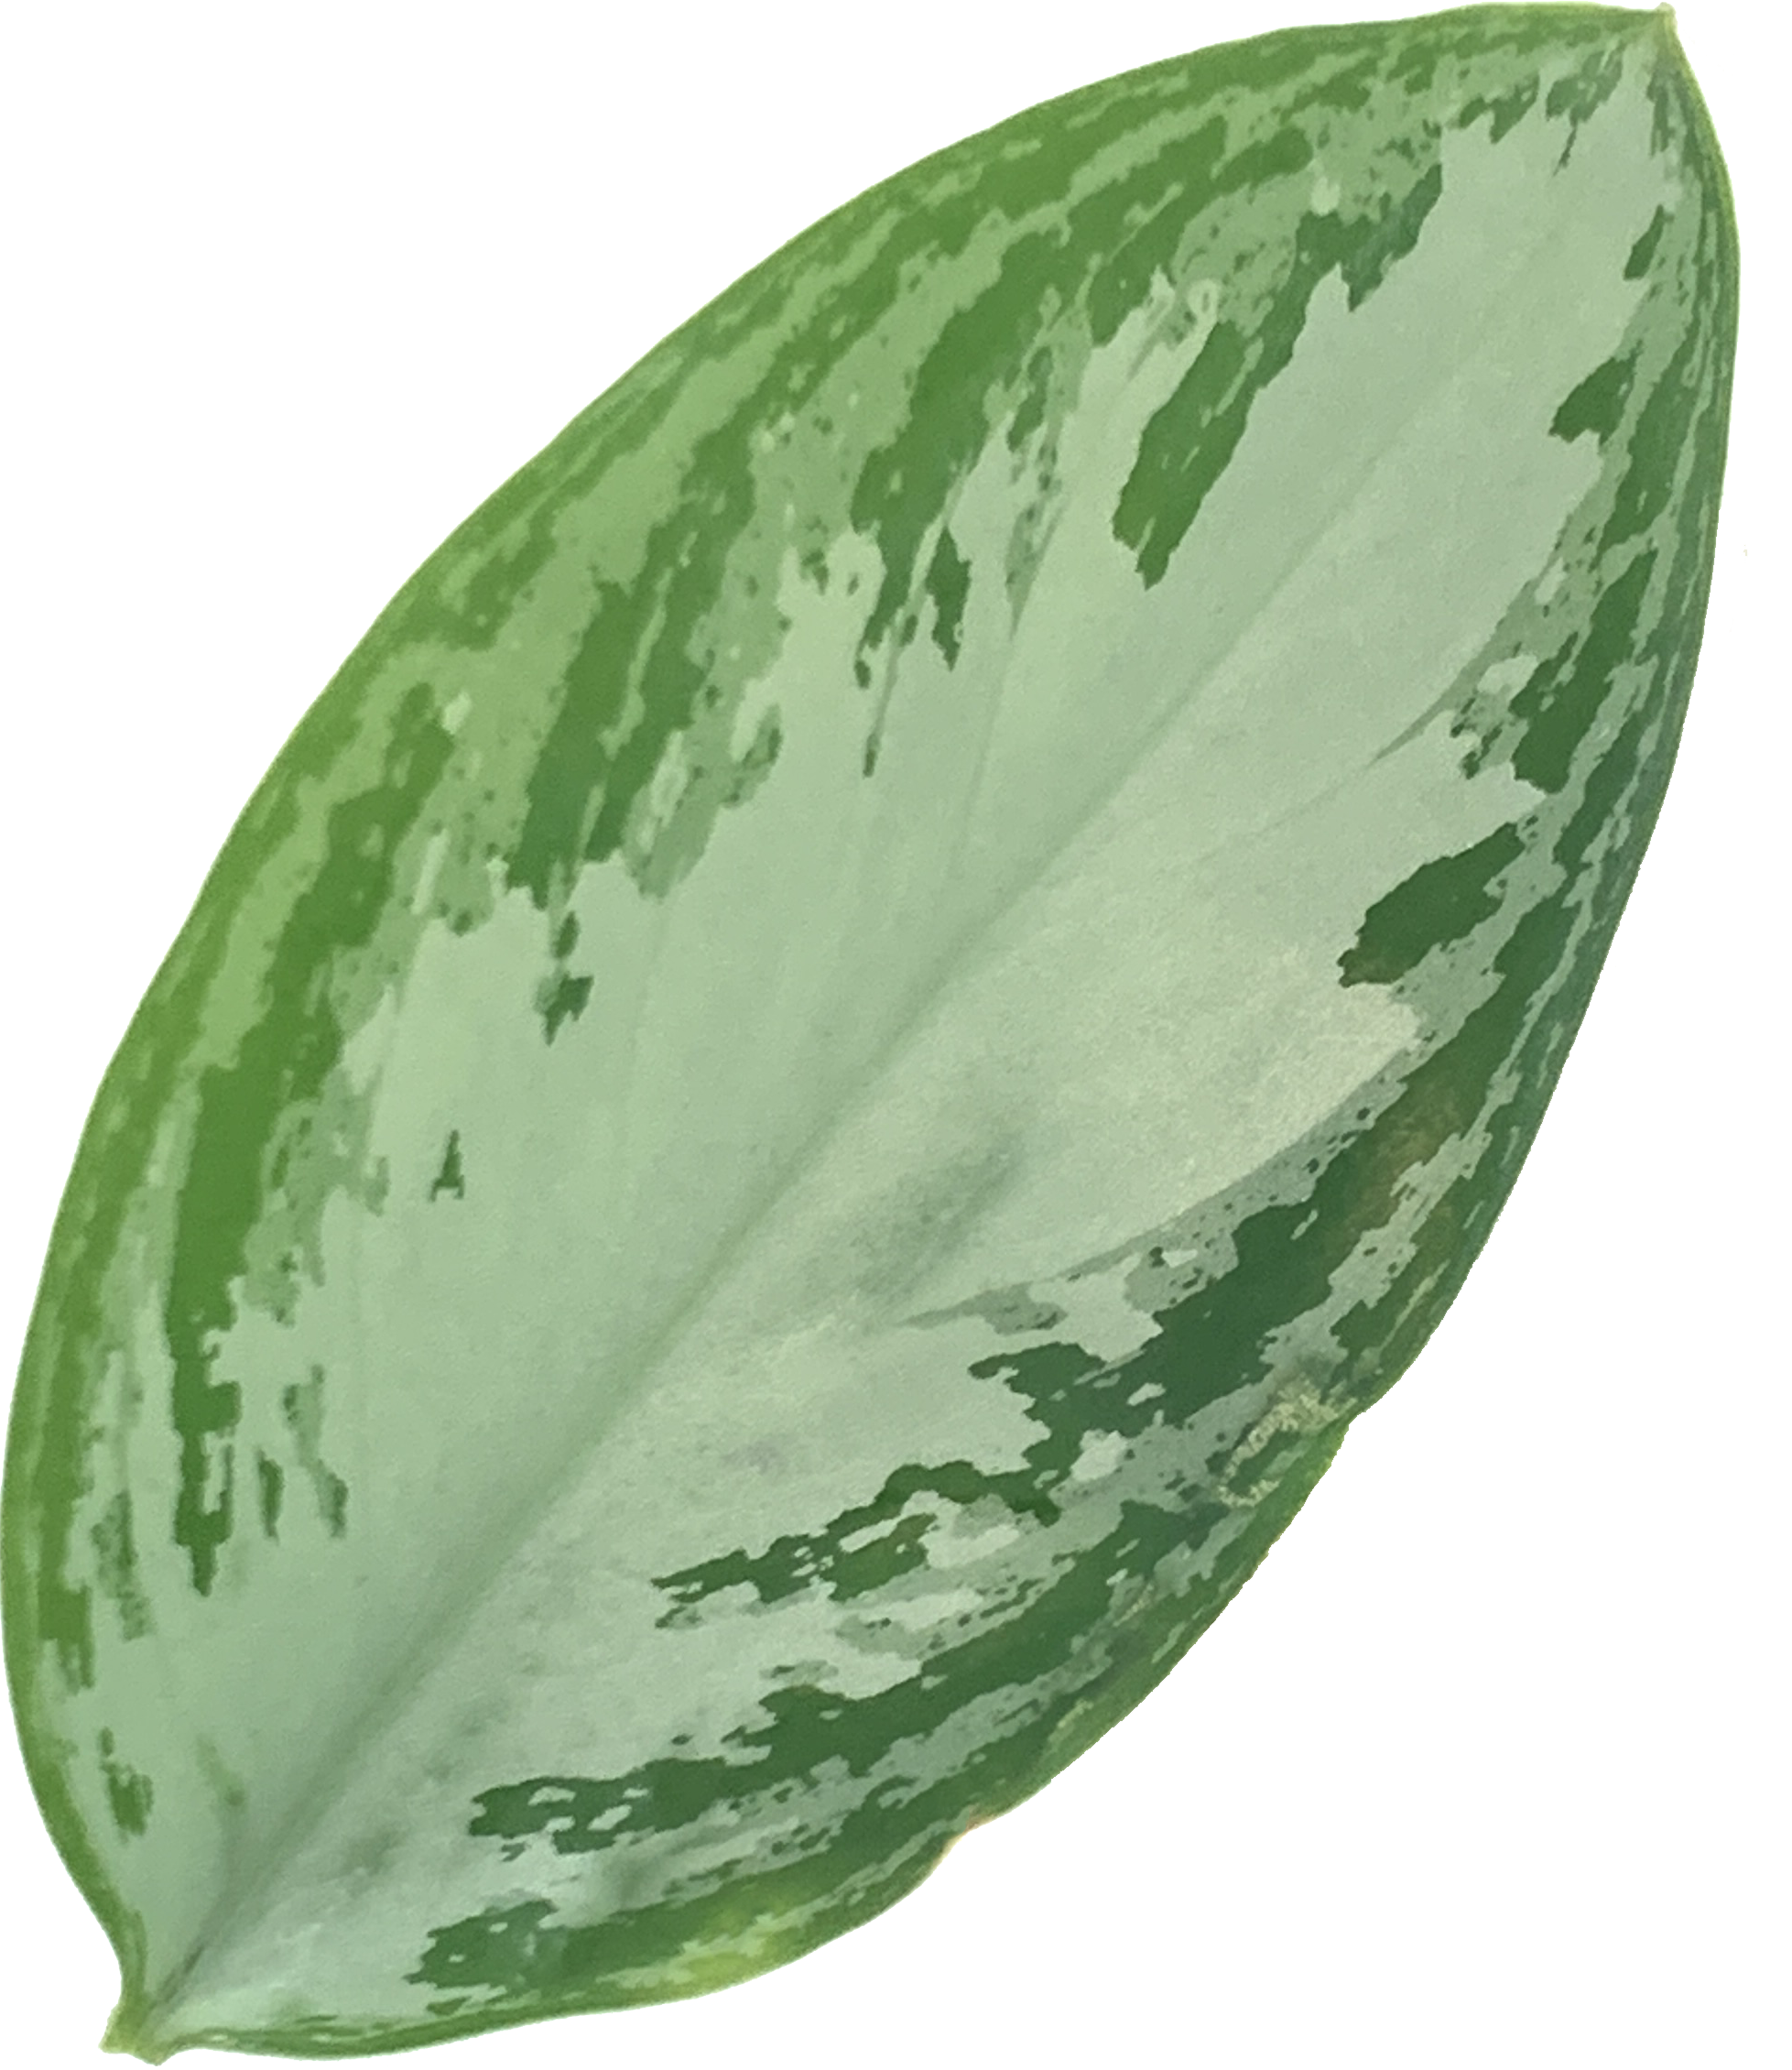 Chinese Evergreen, Aglaonema Leprechaun